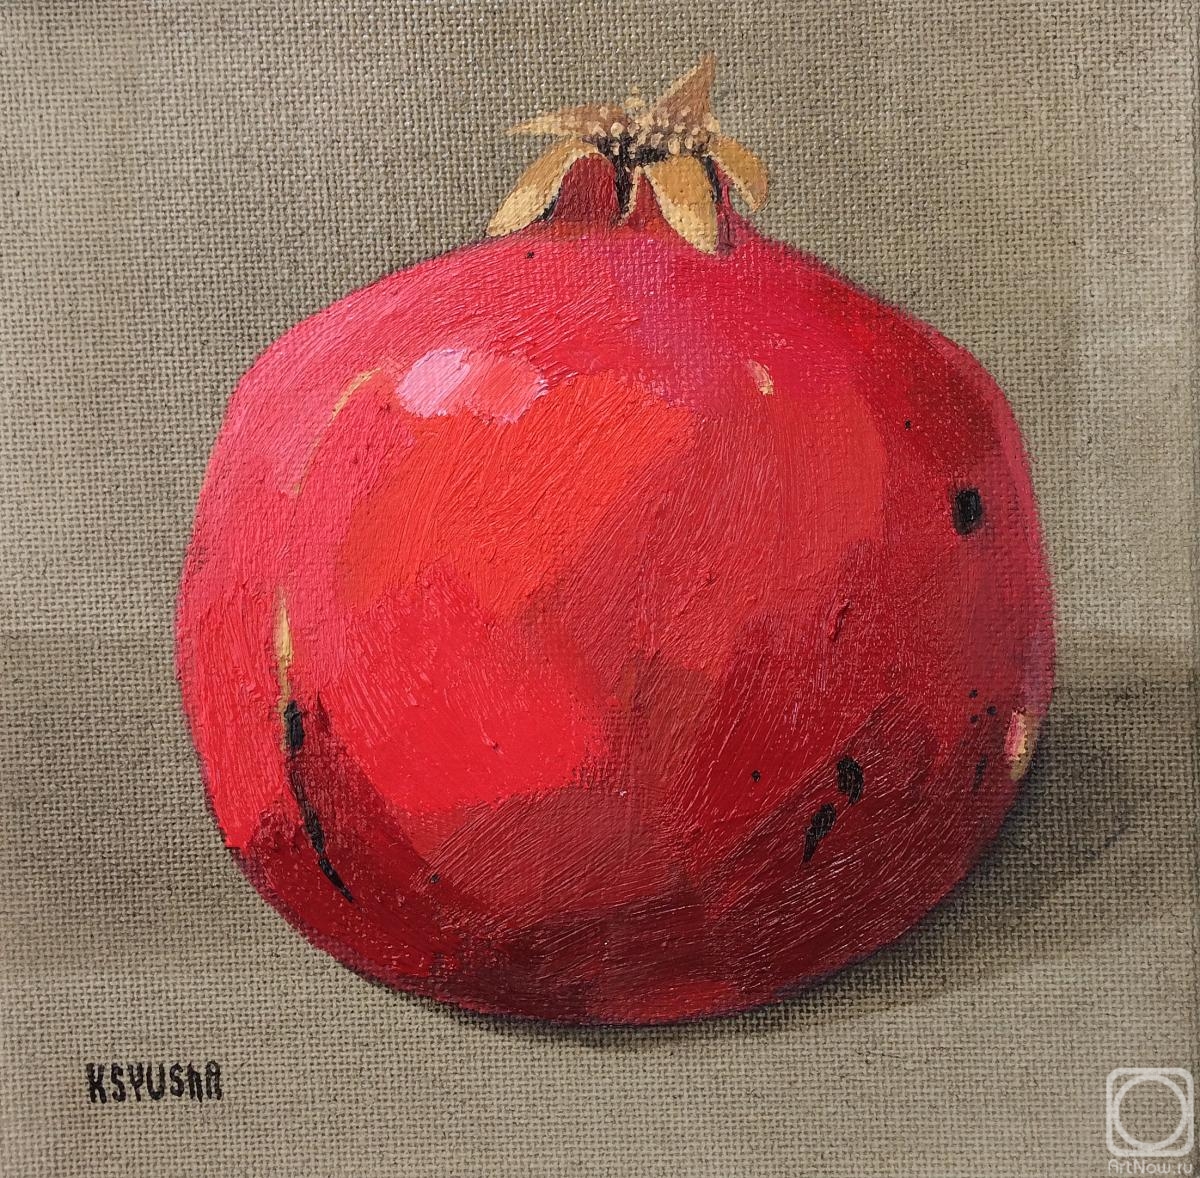 Berestova Ksenia. Pomegranate